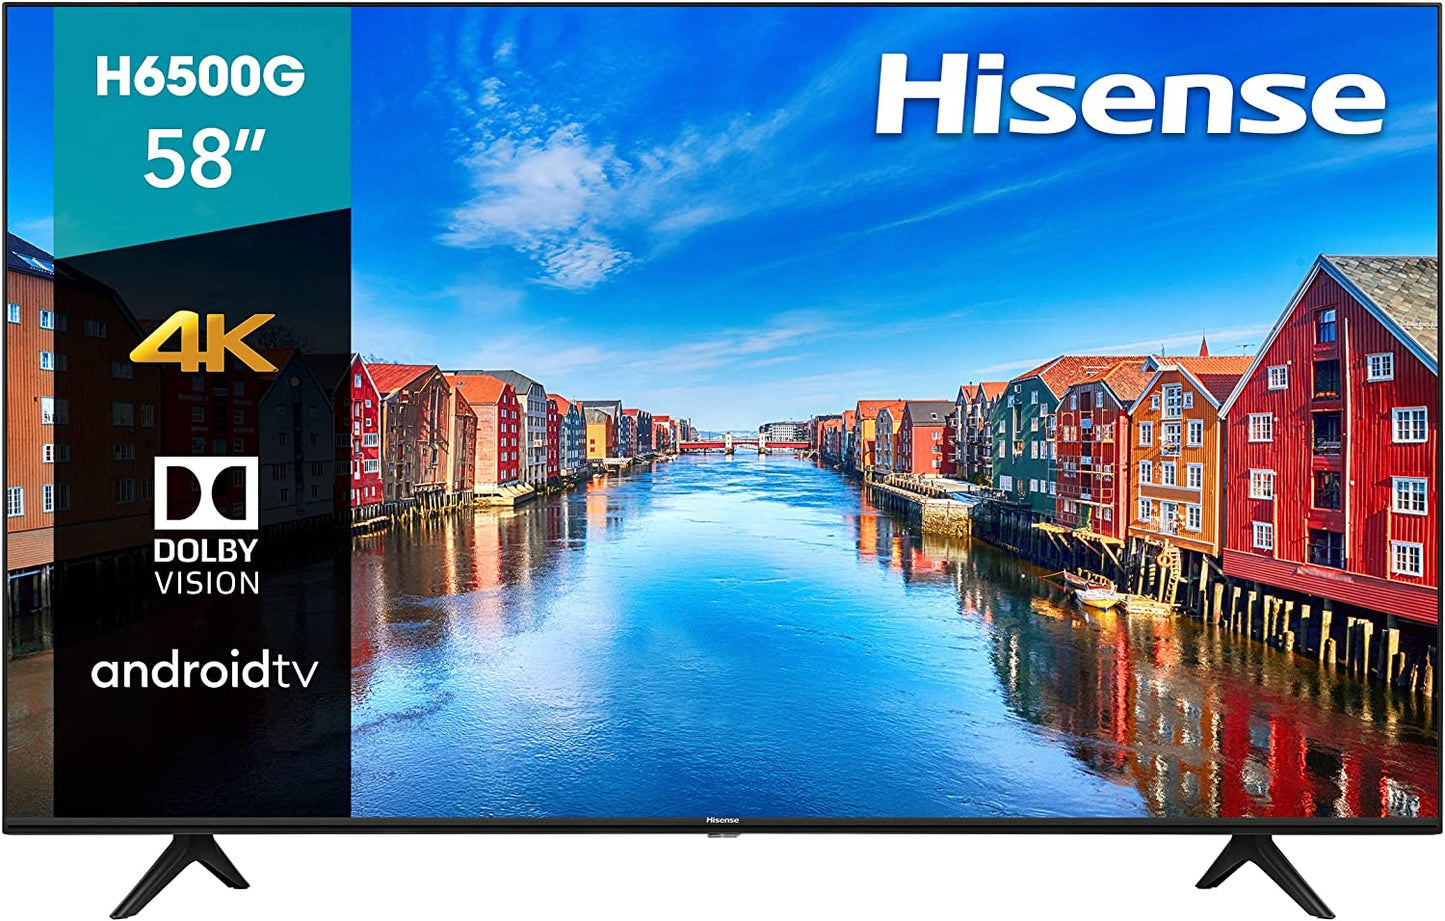 Televisor Hisense 58H6500G, 58 pulgadas, LED 4K UHD, 3840 x 2160 Pixeles.